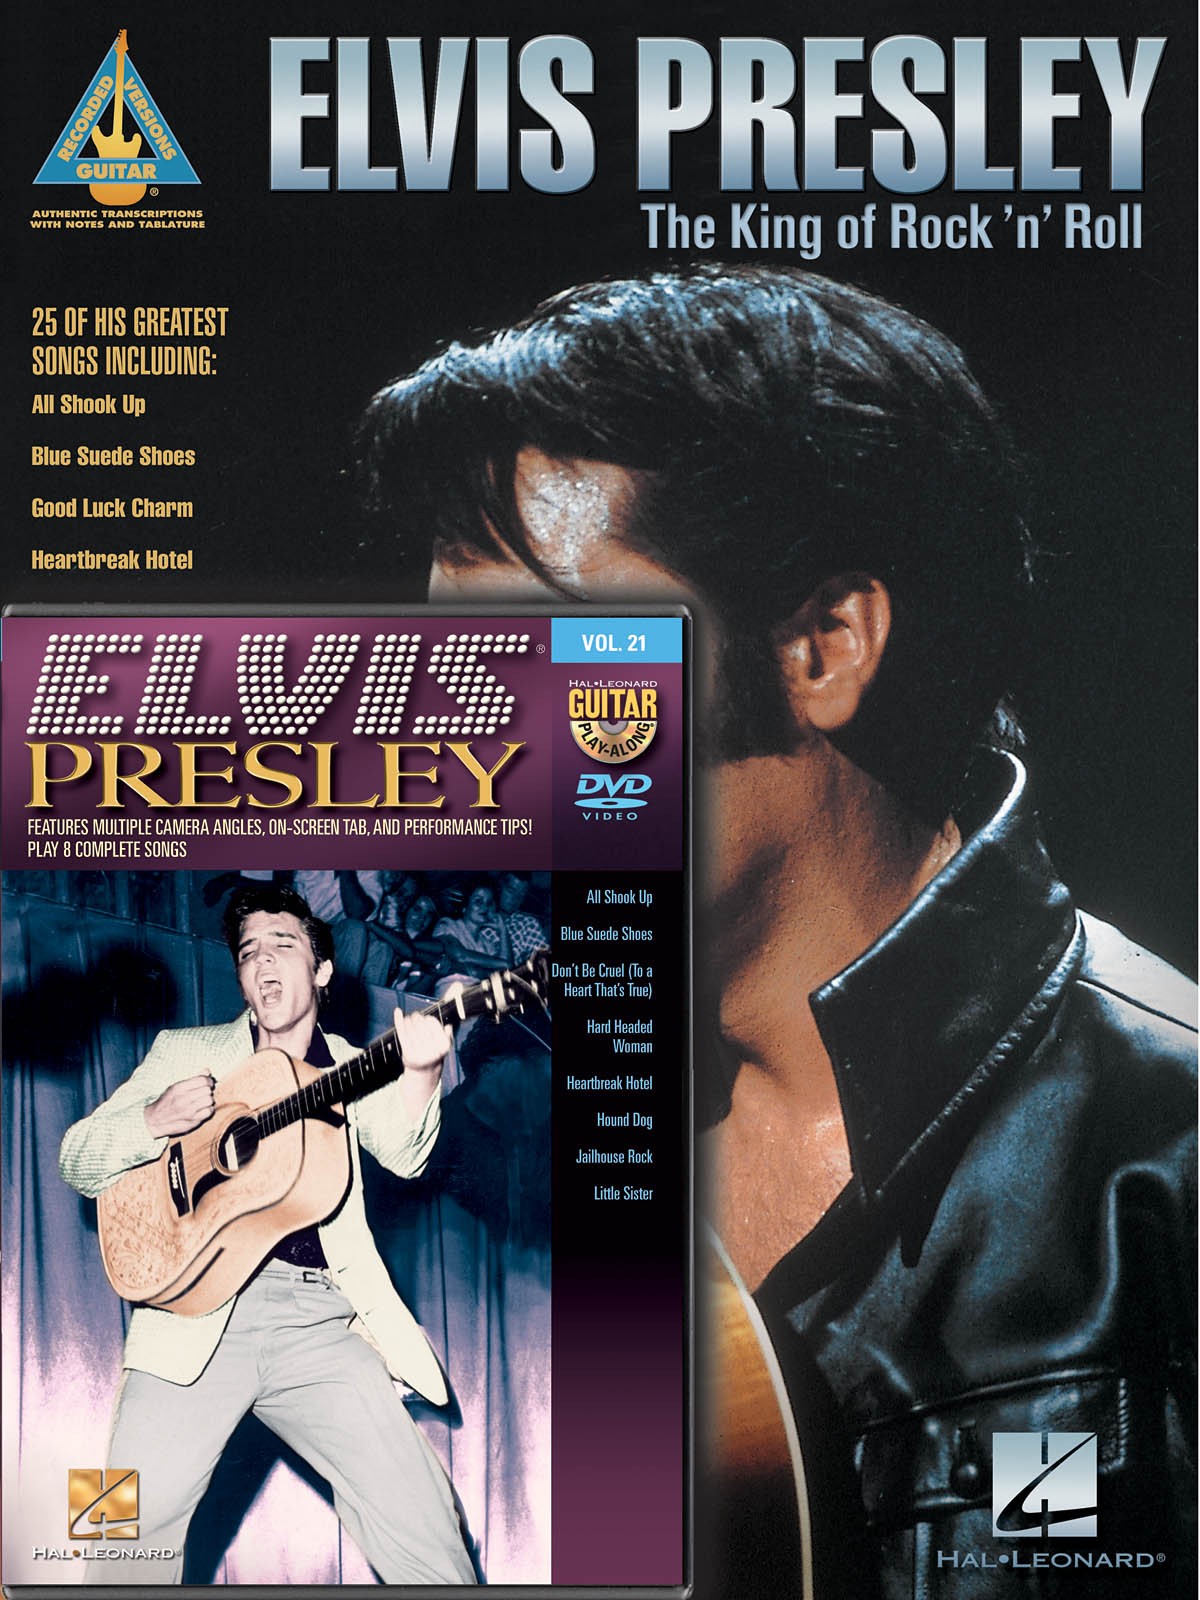 Elvis Presley Guitar Pack - Includes Elvis Presley - The King of Rock 'n' Roll book and Elvis Presley Guitar Play-Along DVD